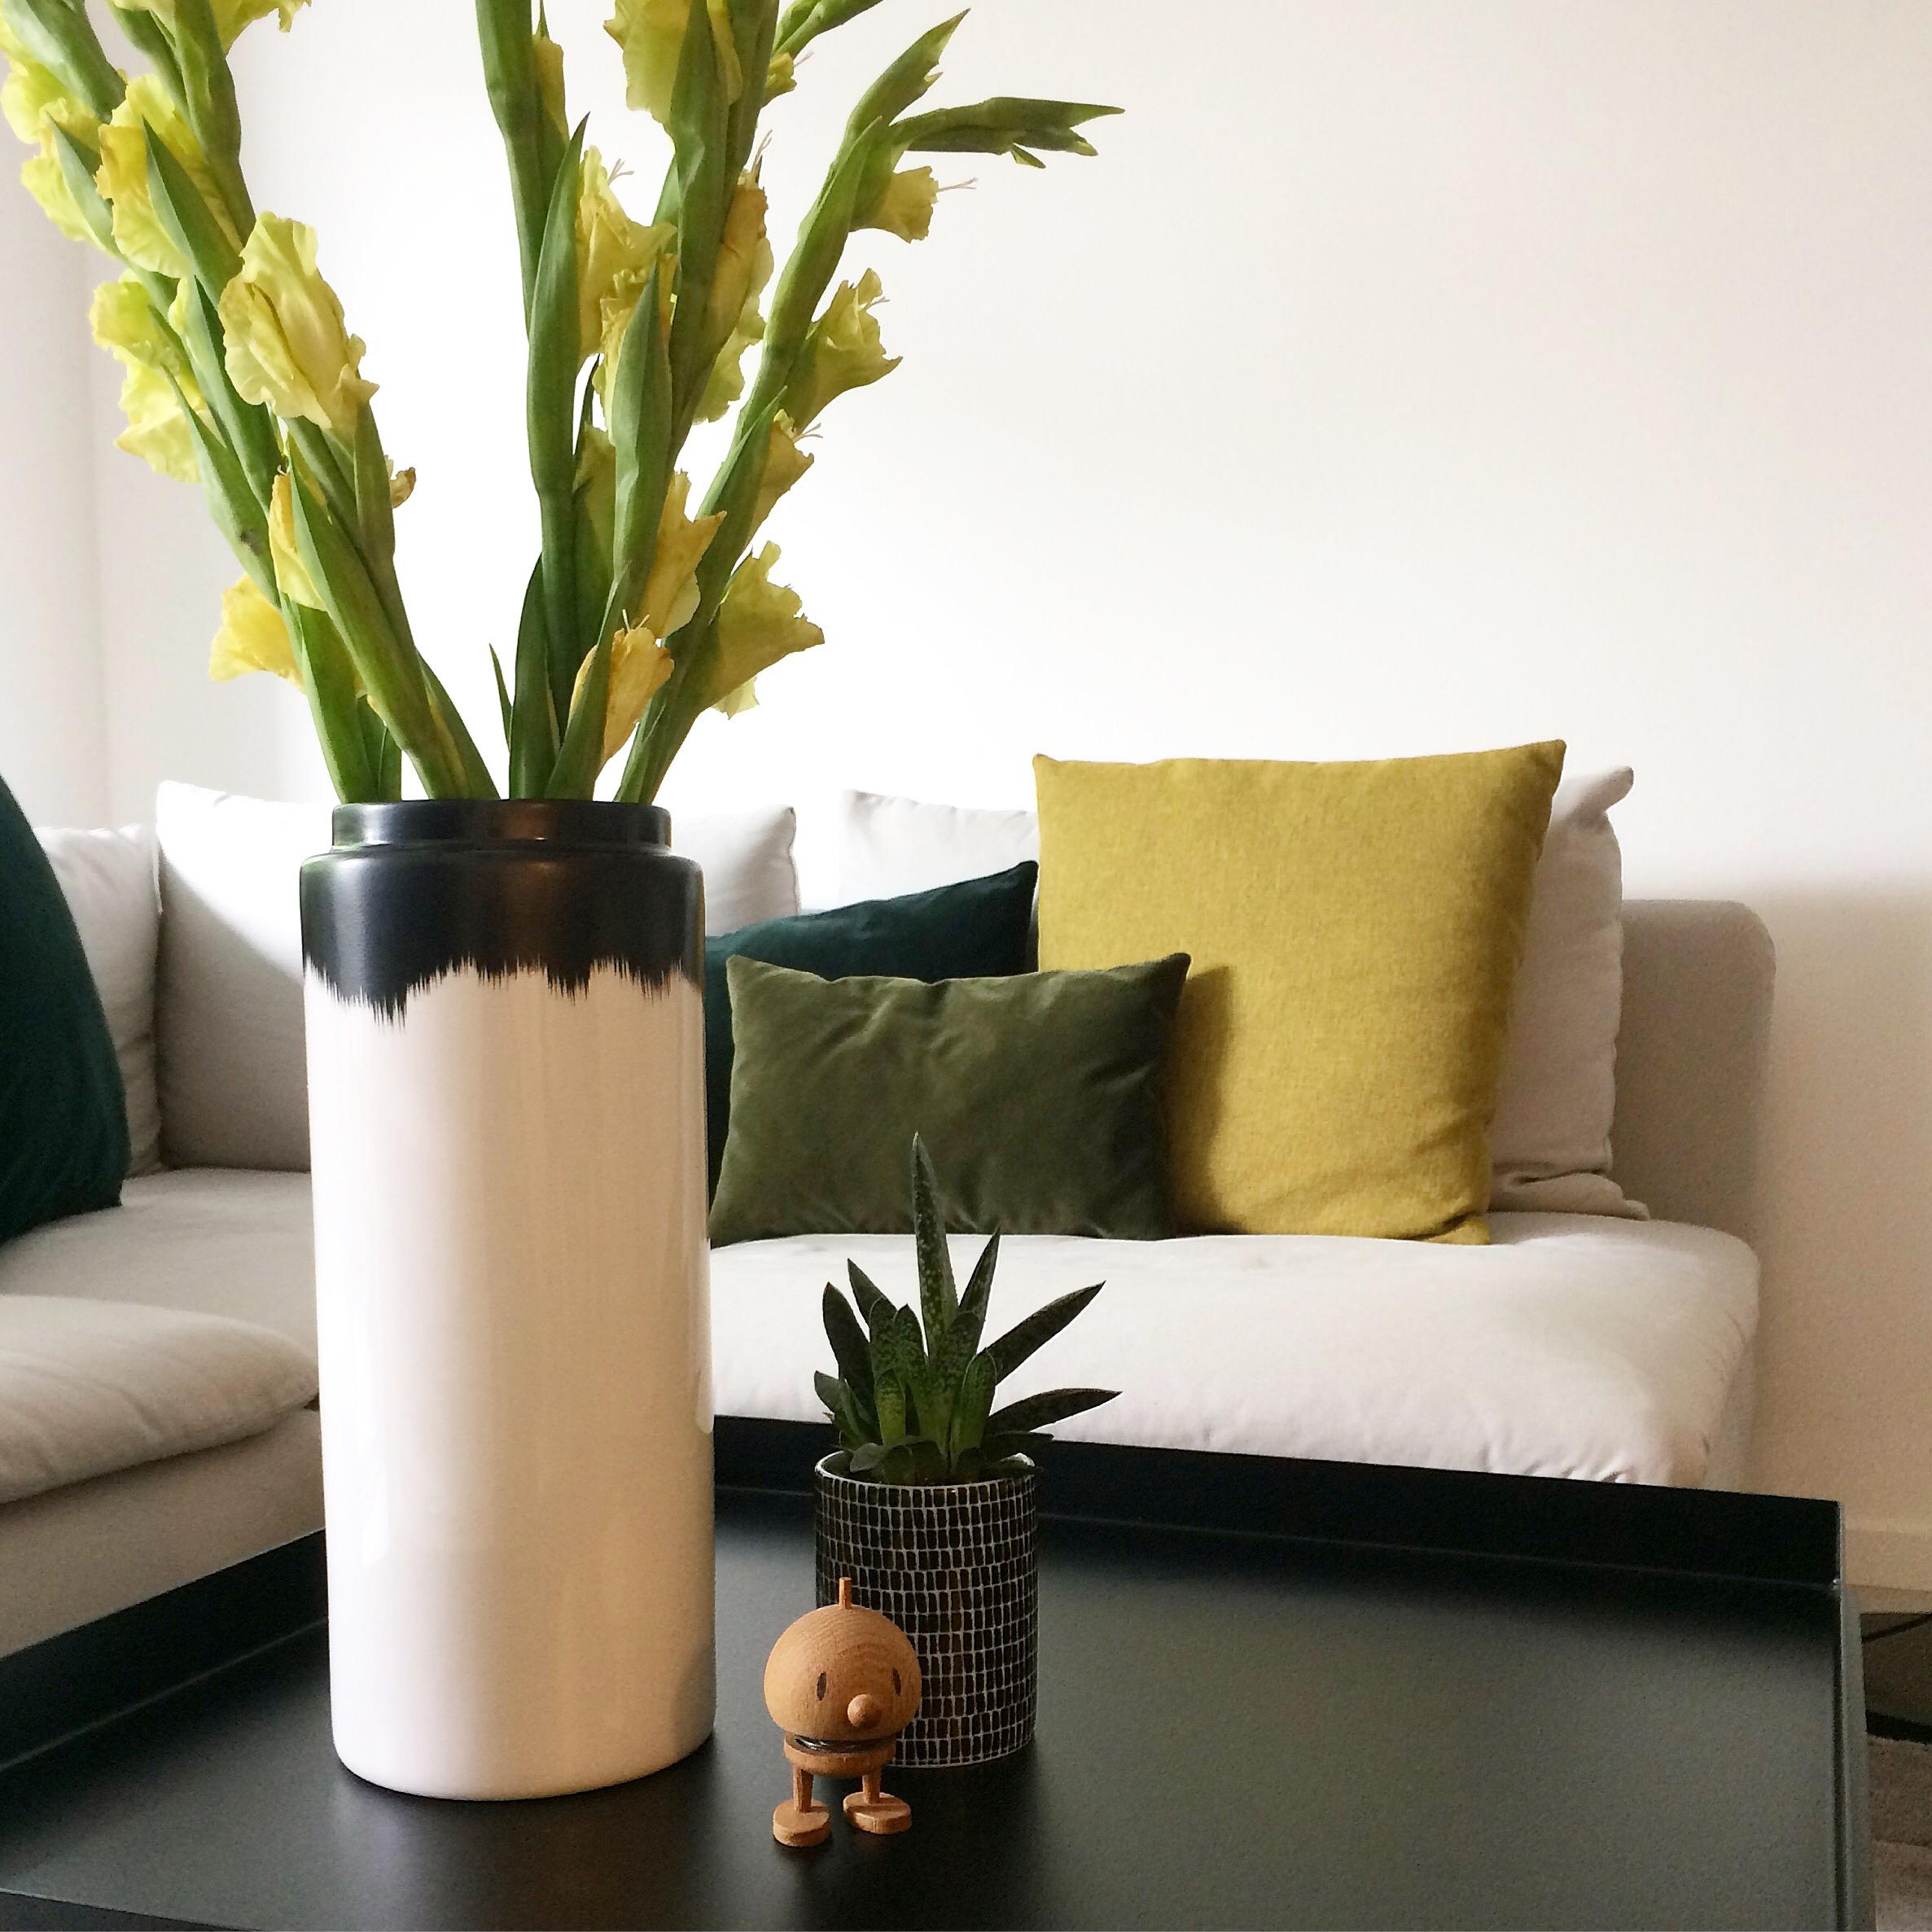 Wohnzimmer #gladiolen #flowers #interior #couch #herbstlich #interiordesign #minimalism #grauweißeküche